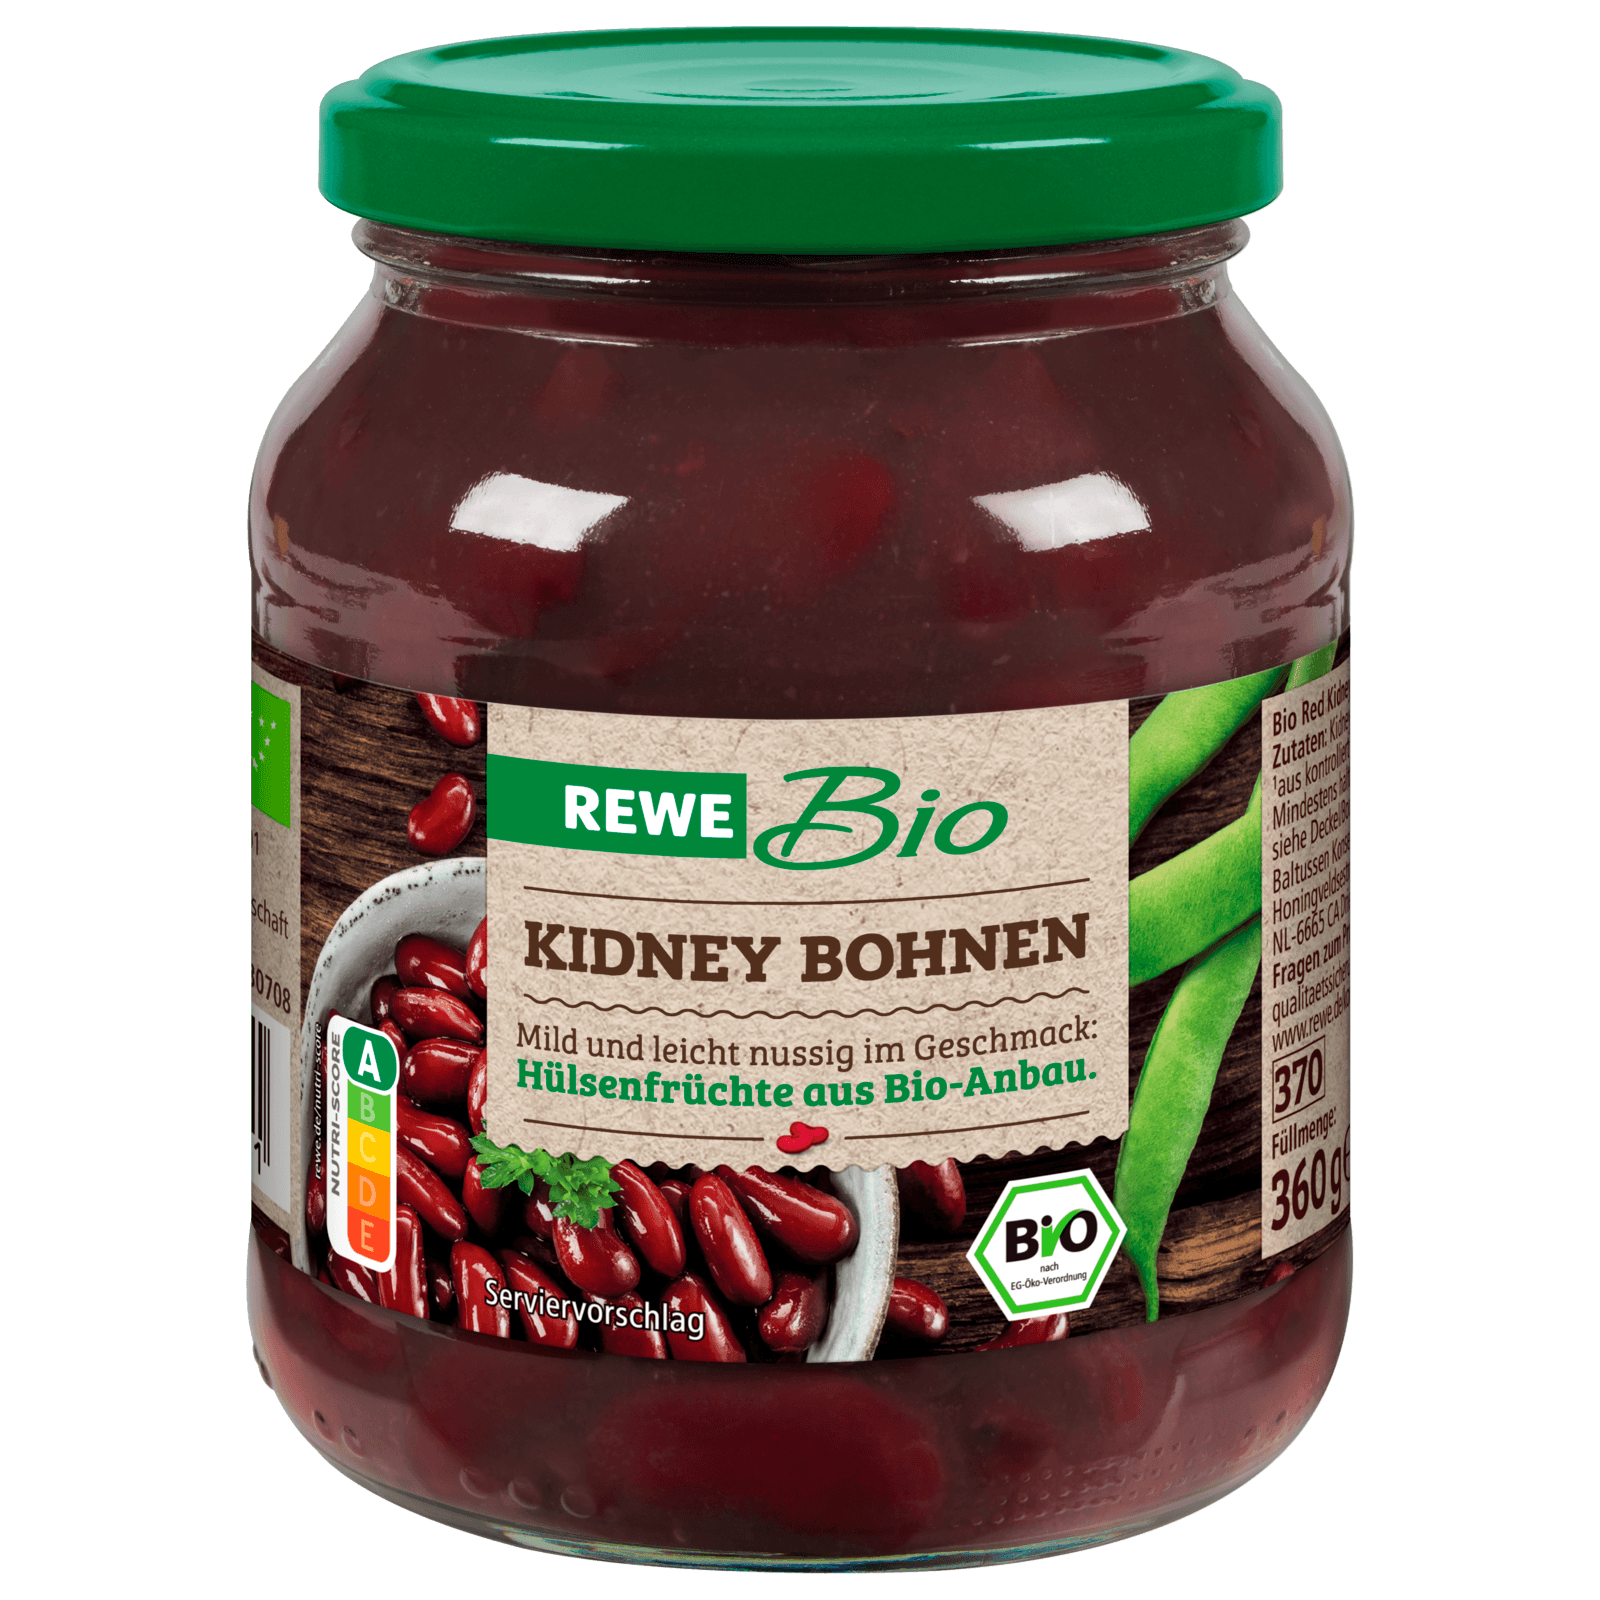 REWE Bio Kidneybohnen 360g